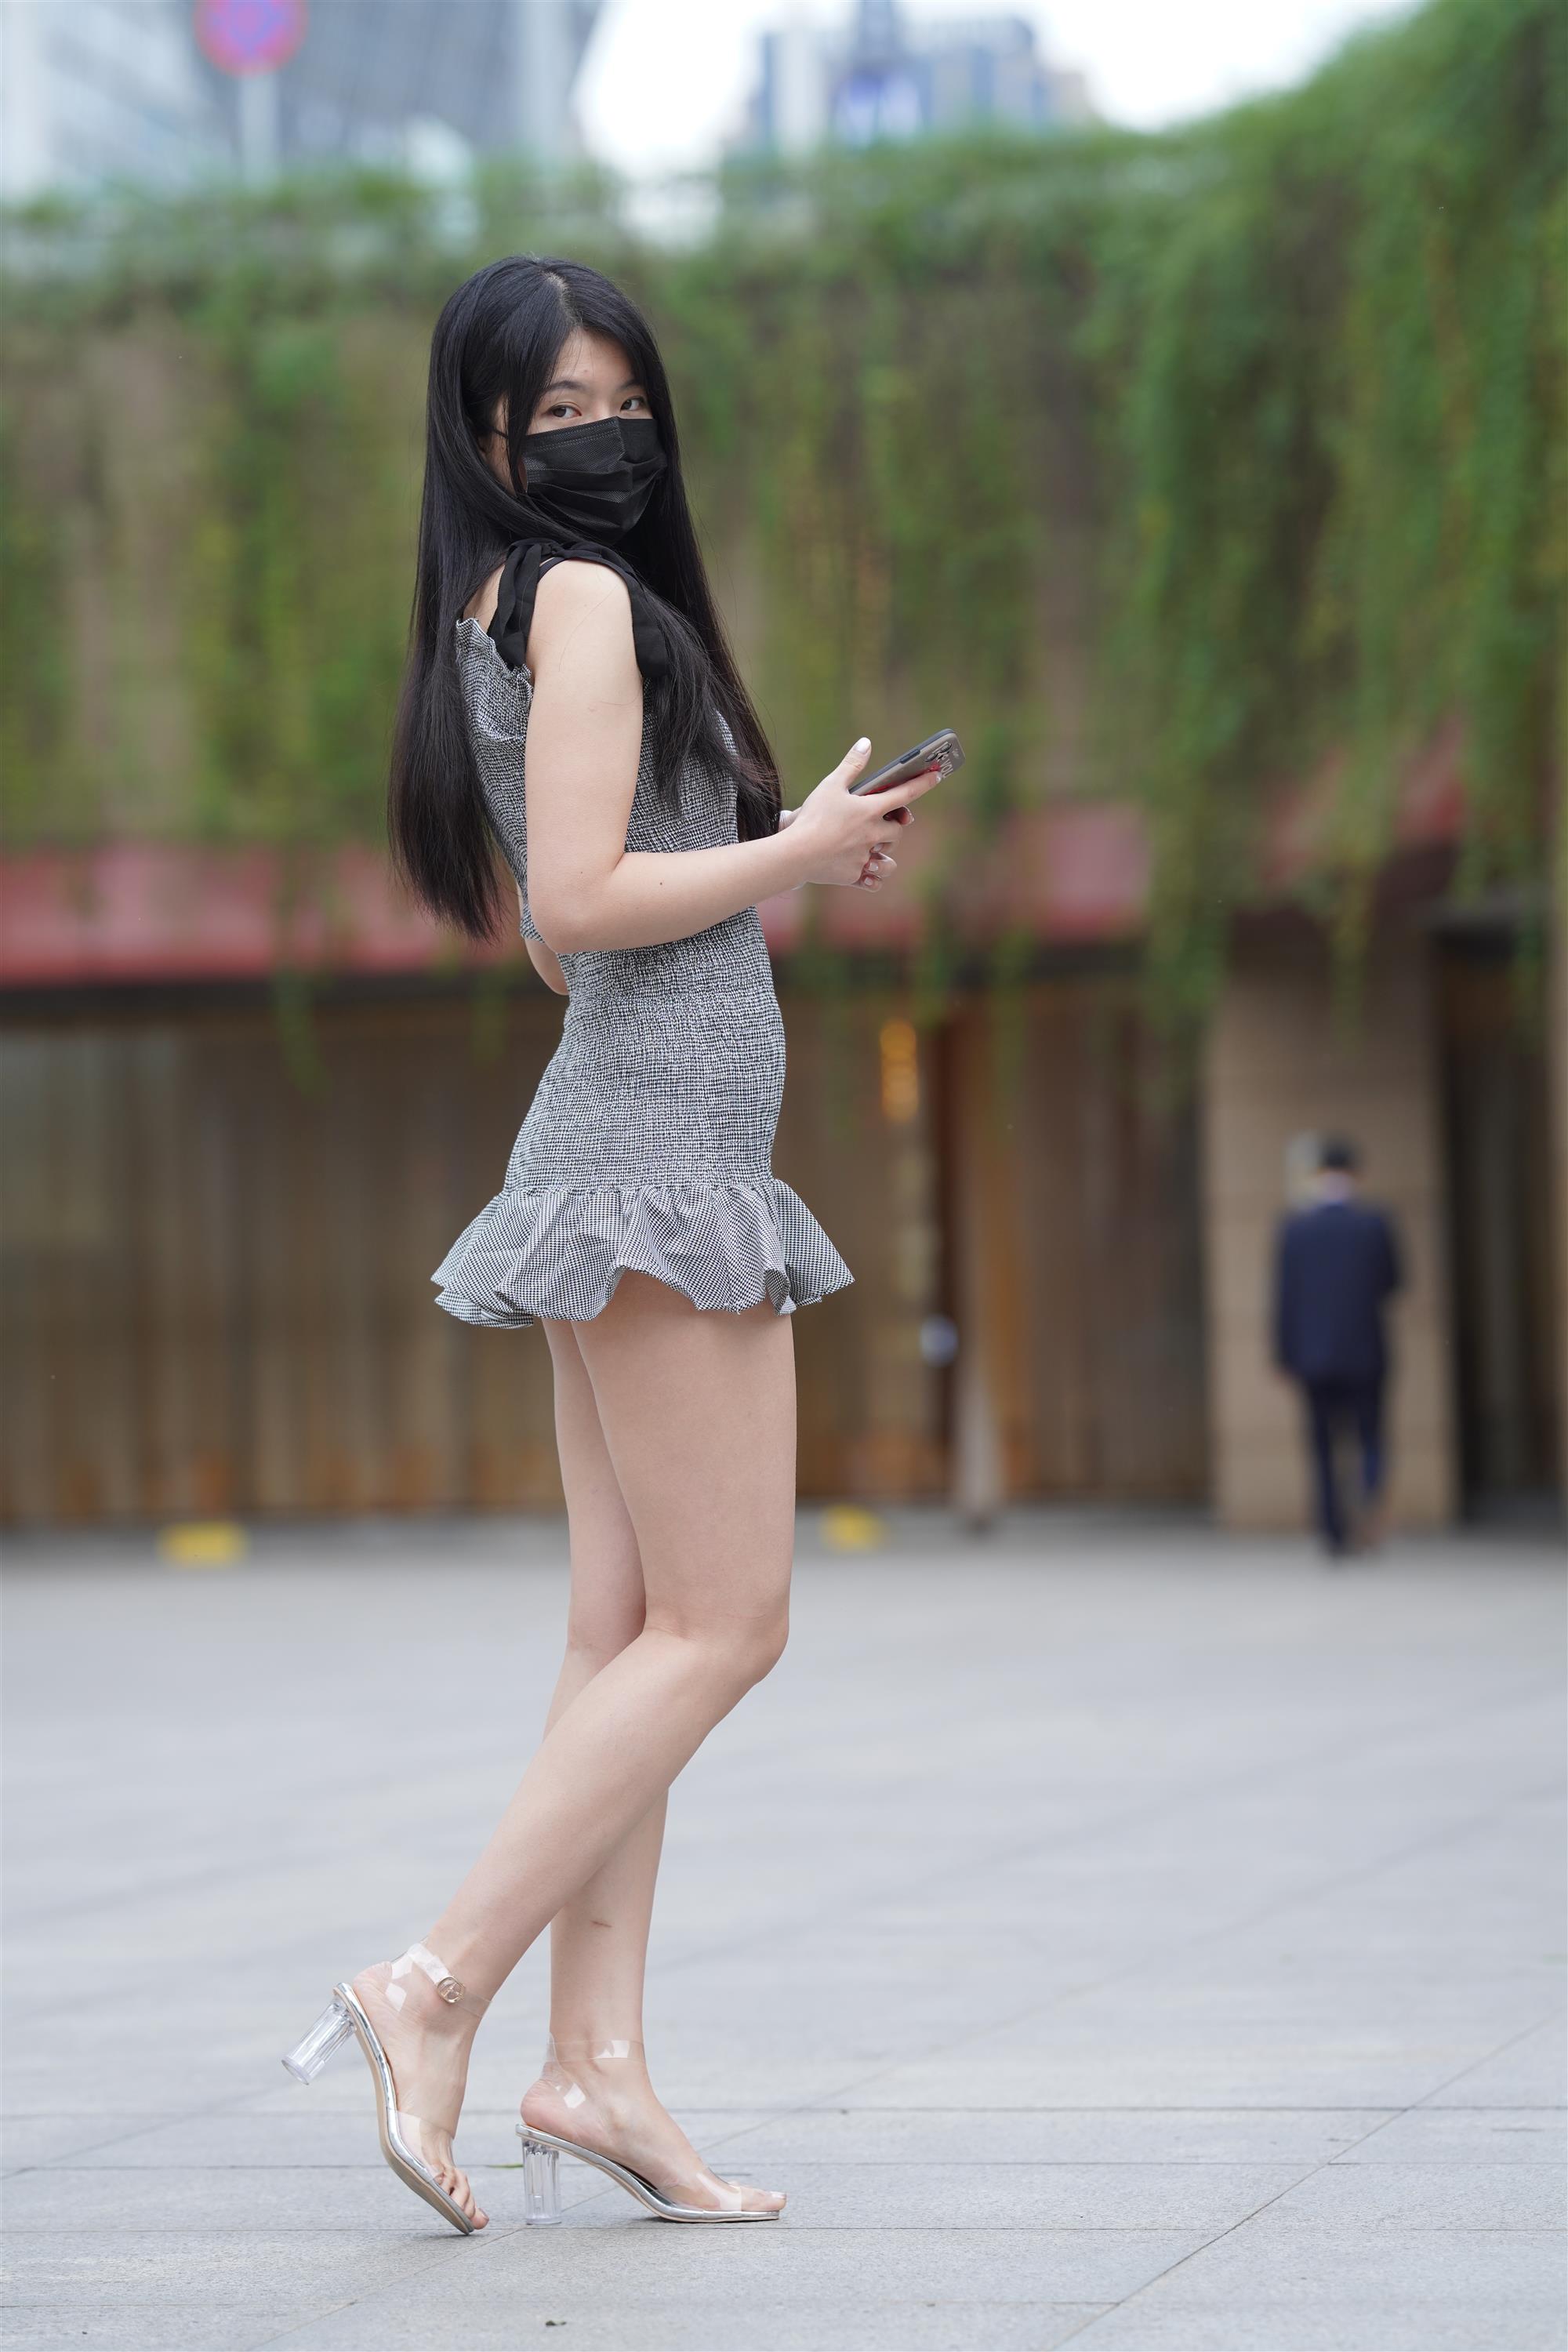 Street Girl In Short Skirt - 287.jpg